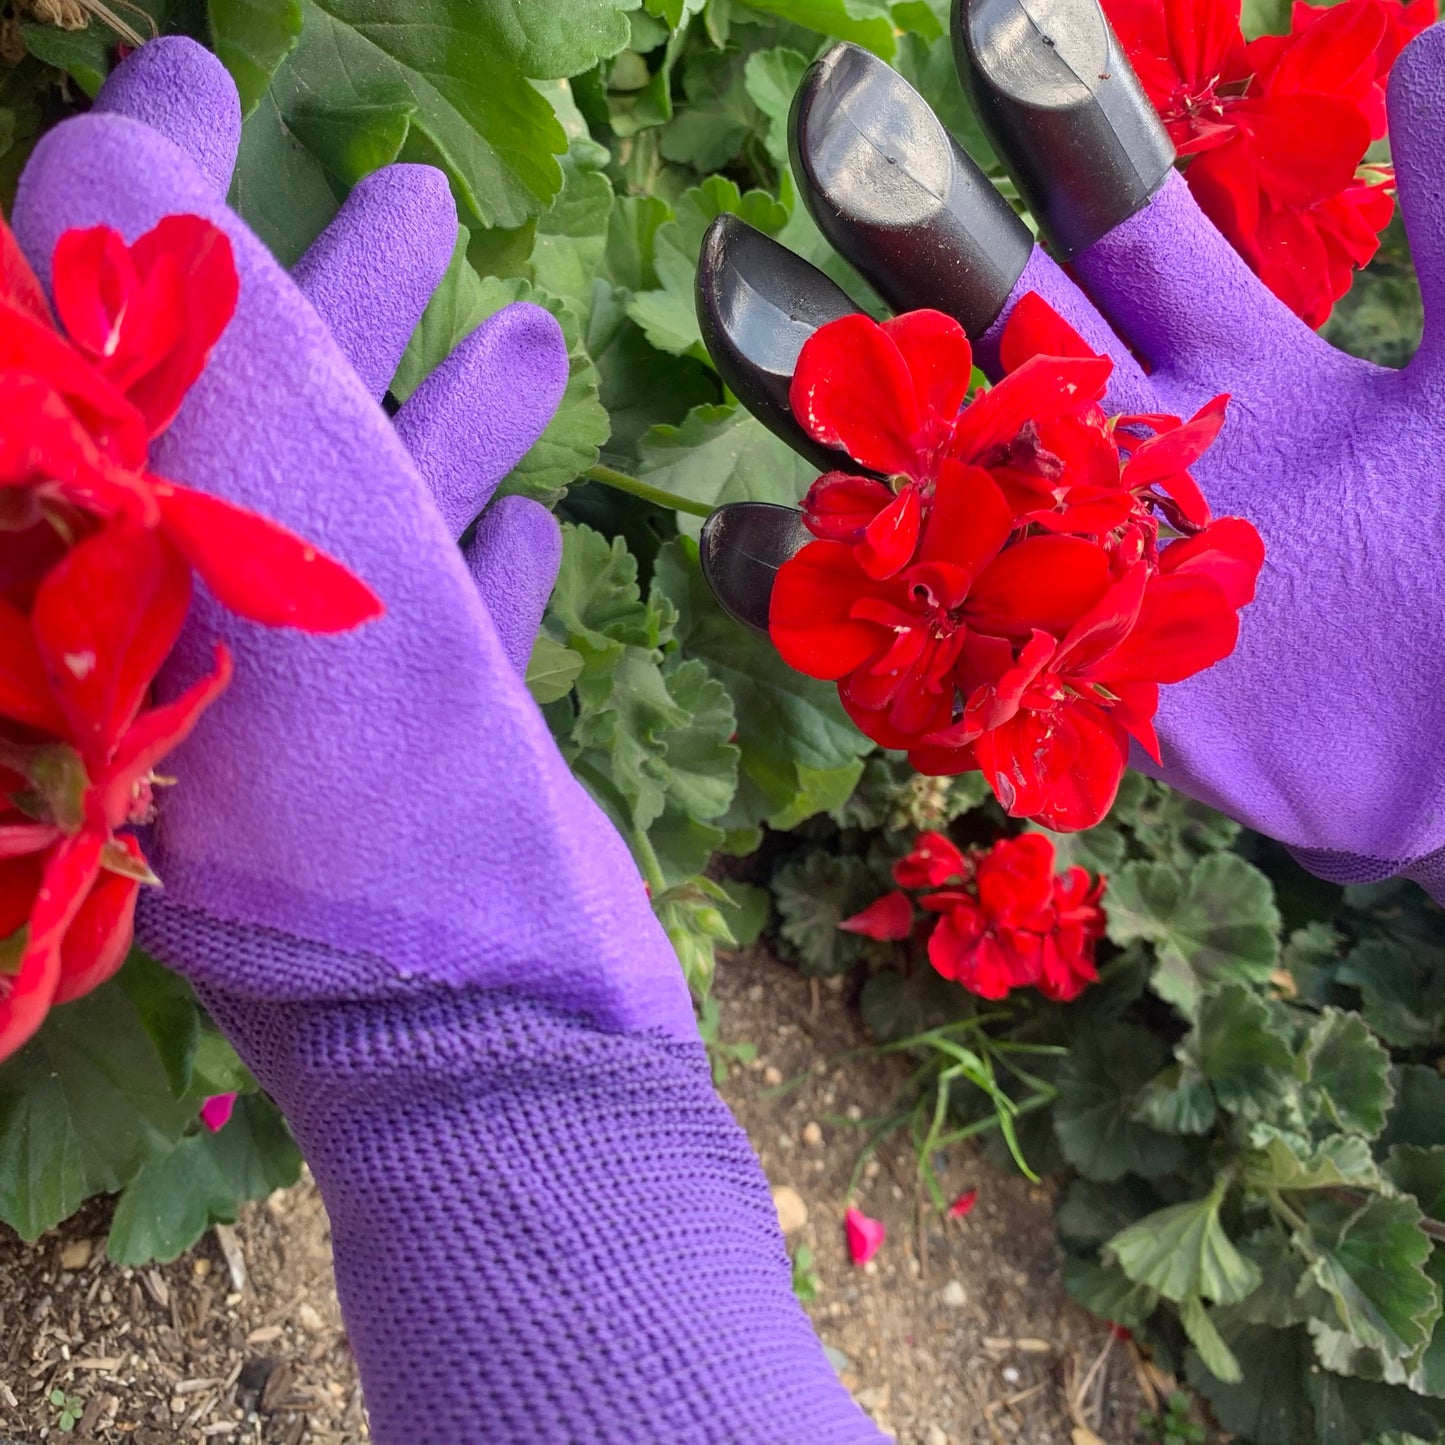 Claw Gardening Glove